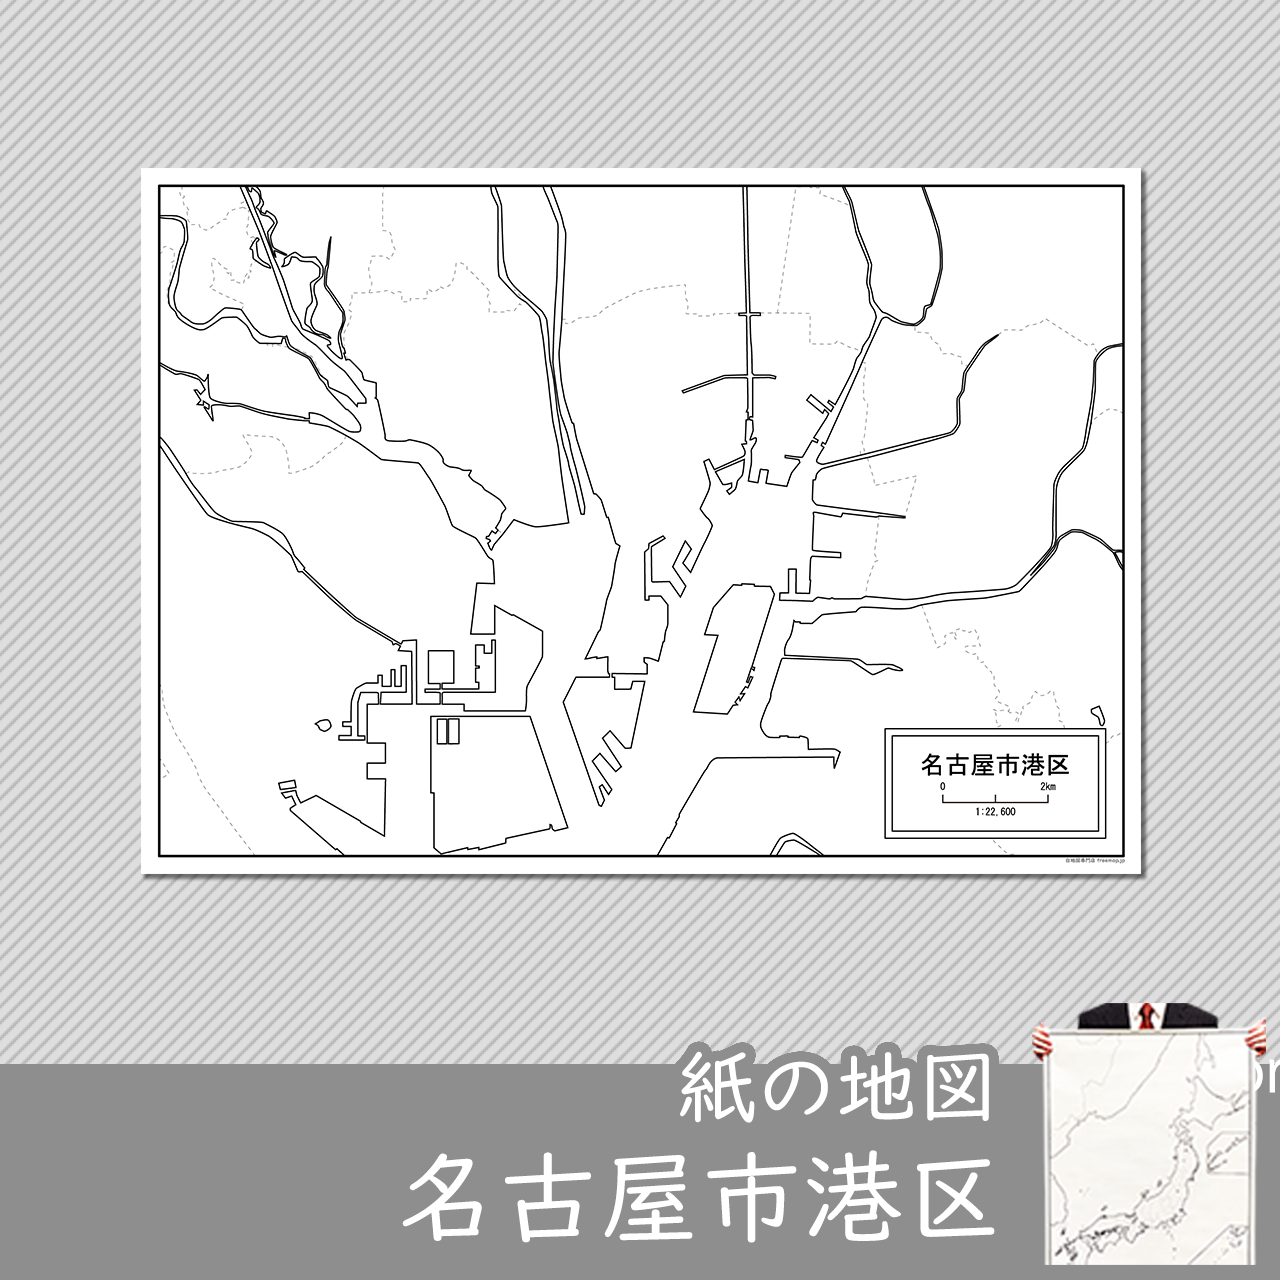 名古屋市港区の紙の白地図のサムネイル